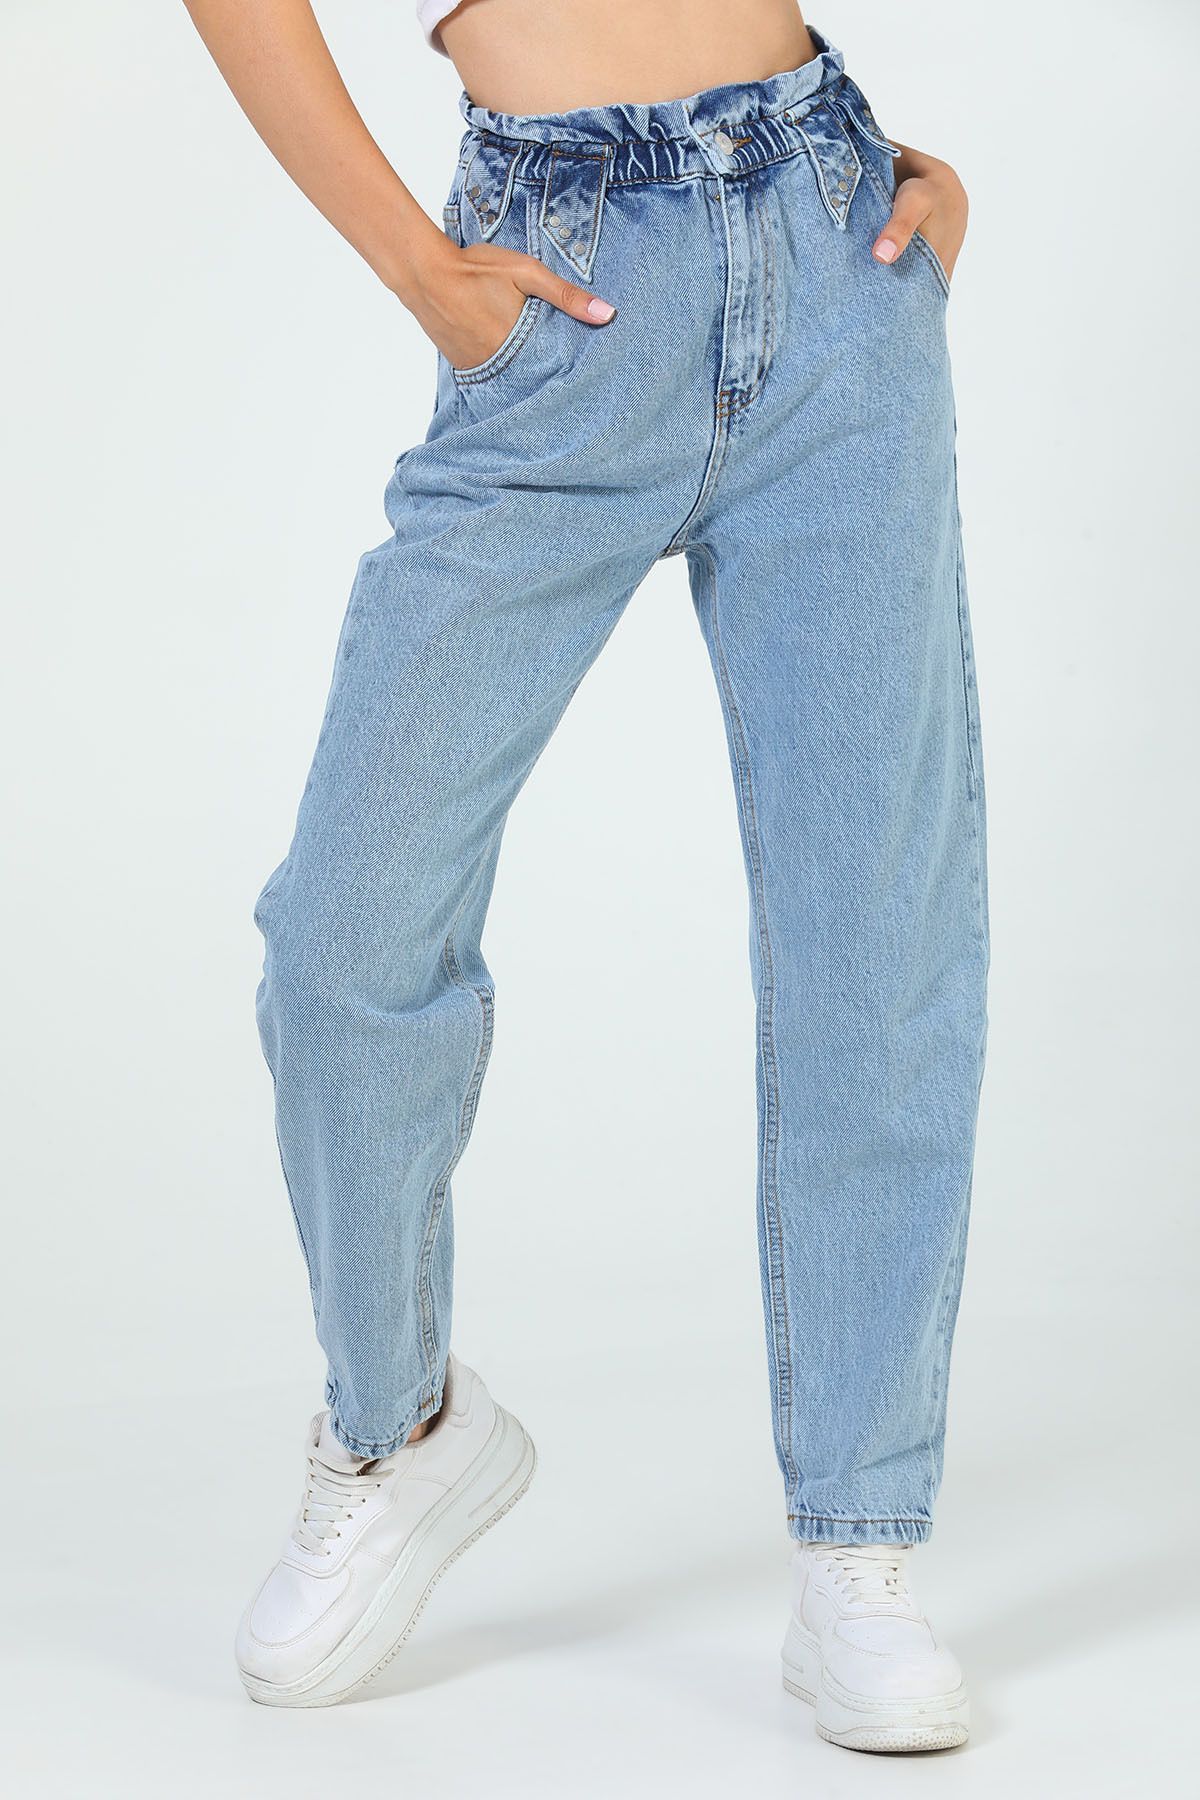 Julude Açıkmavi Kadın Bel Büzgülü Yüksek Bel Jeans Pantolon